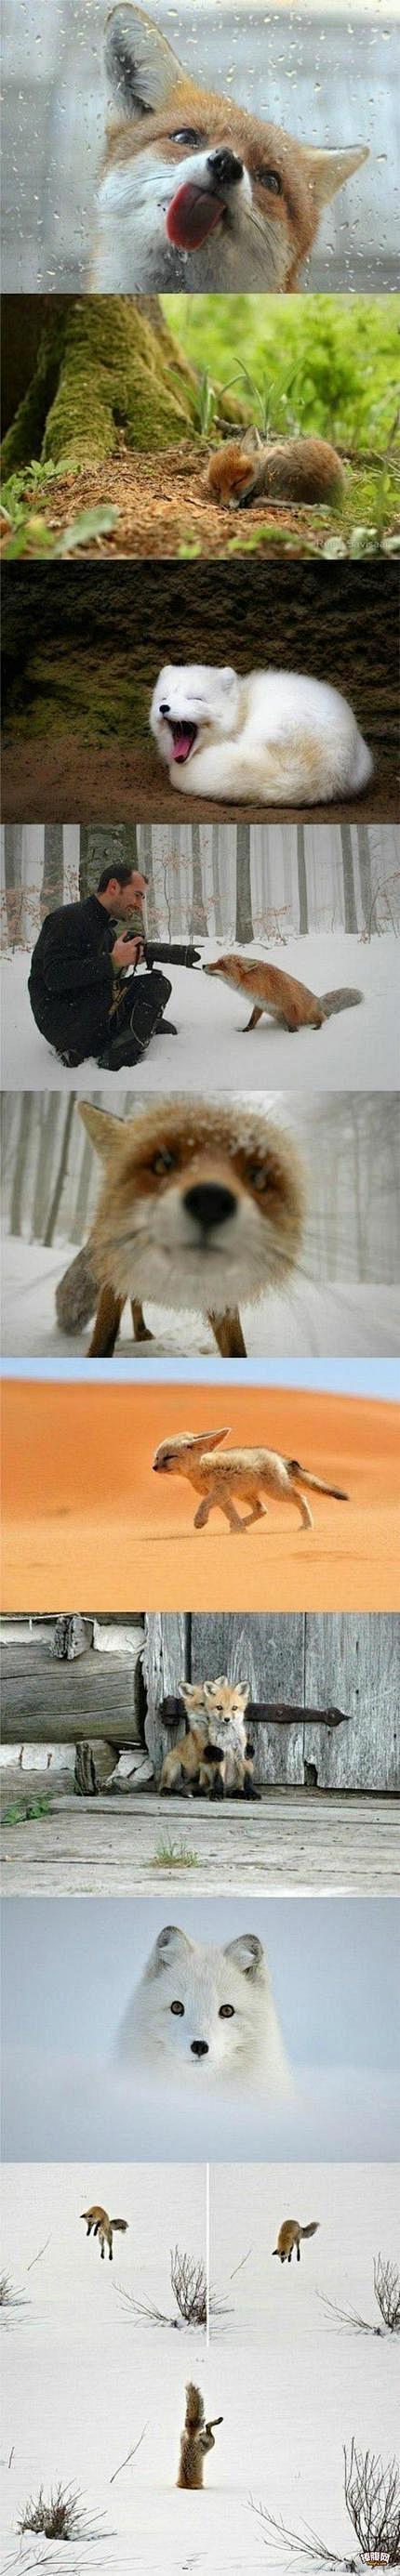 狐狸是一种比较二又喜欢卖萌的动物